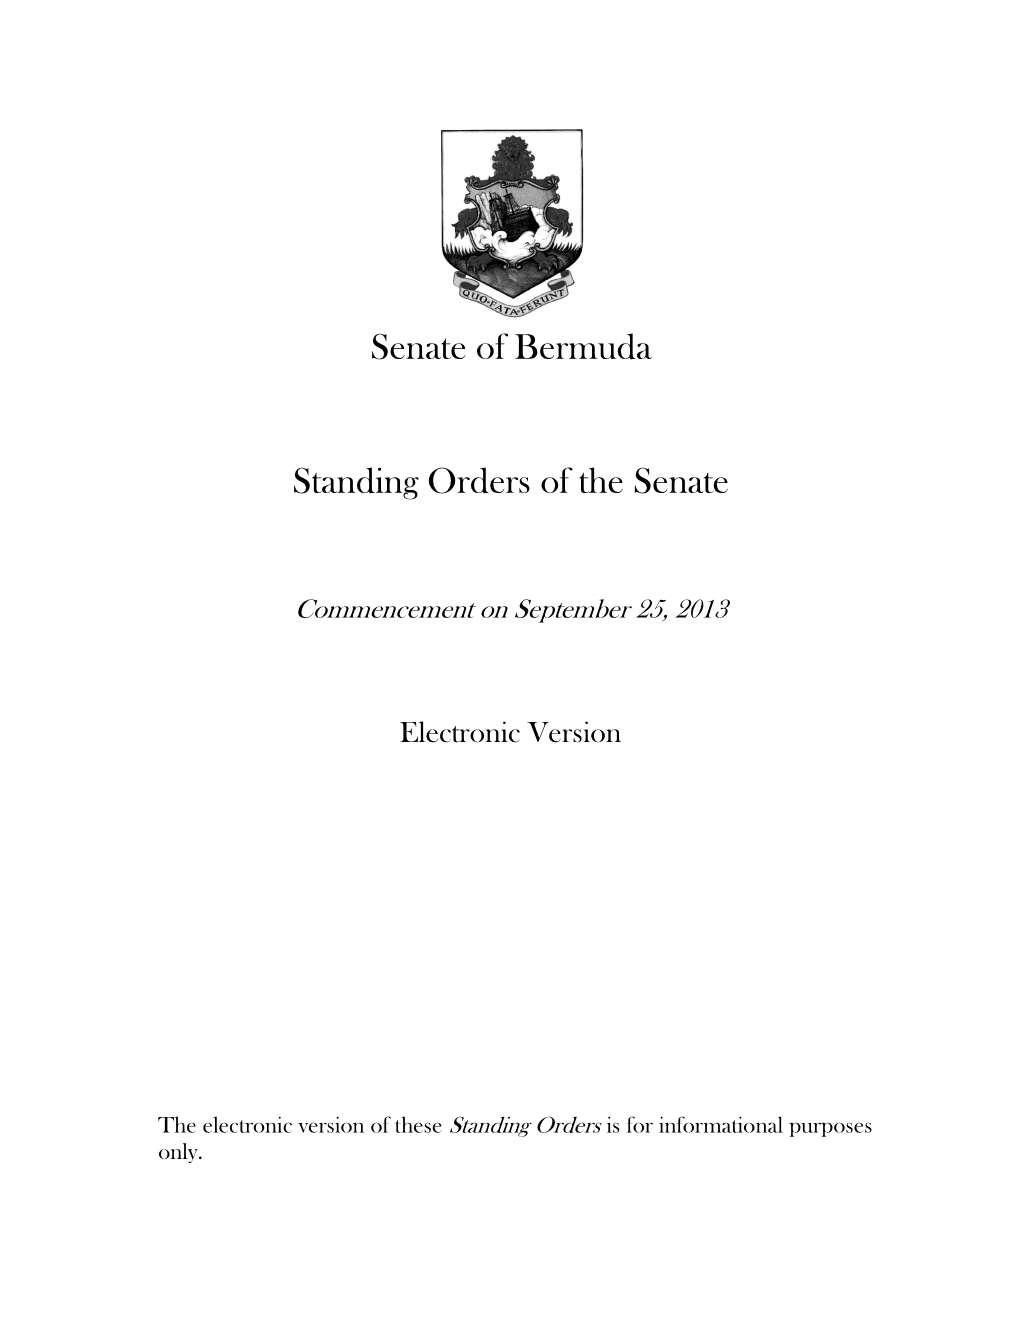 Senate of Bermuda Standing Orders of the Senate